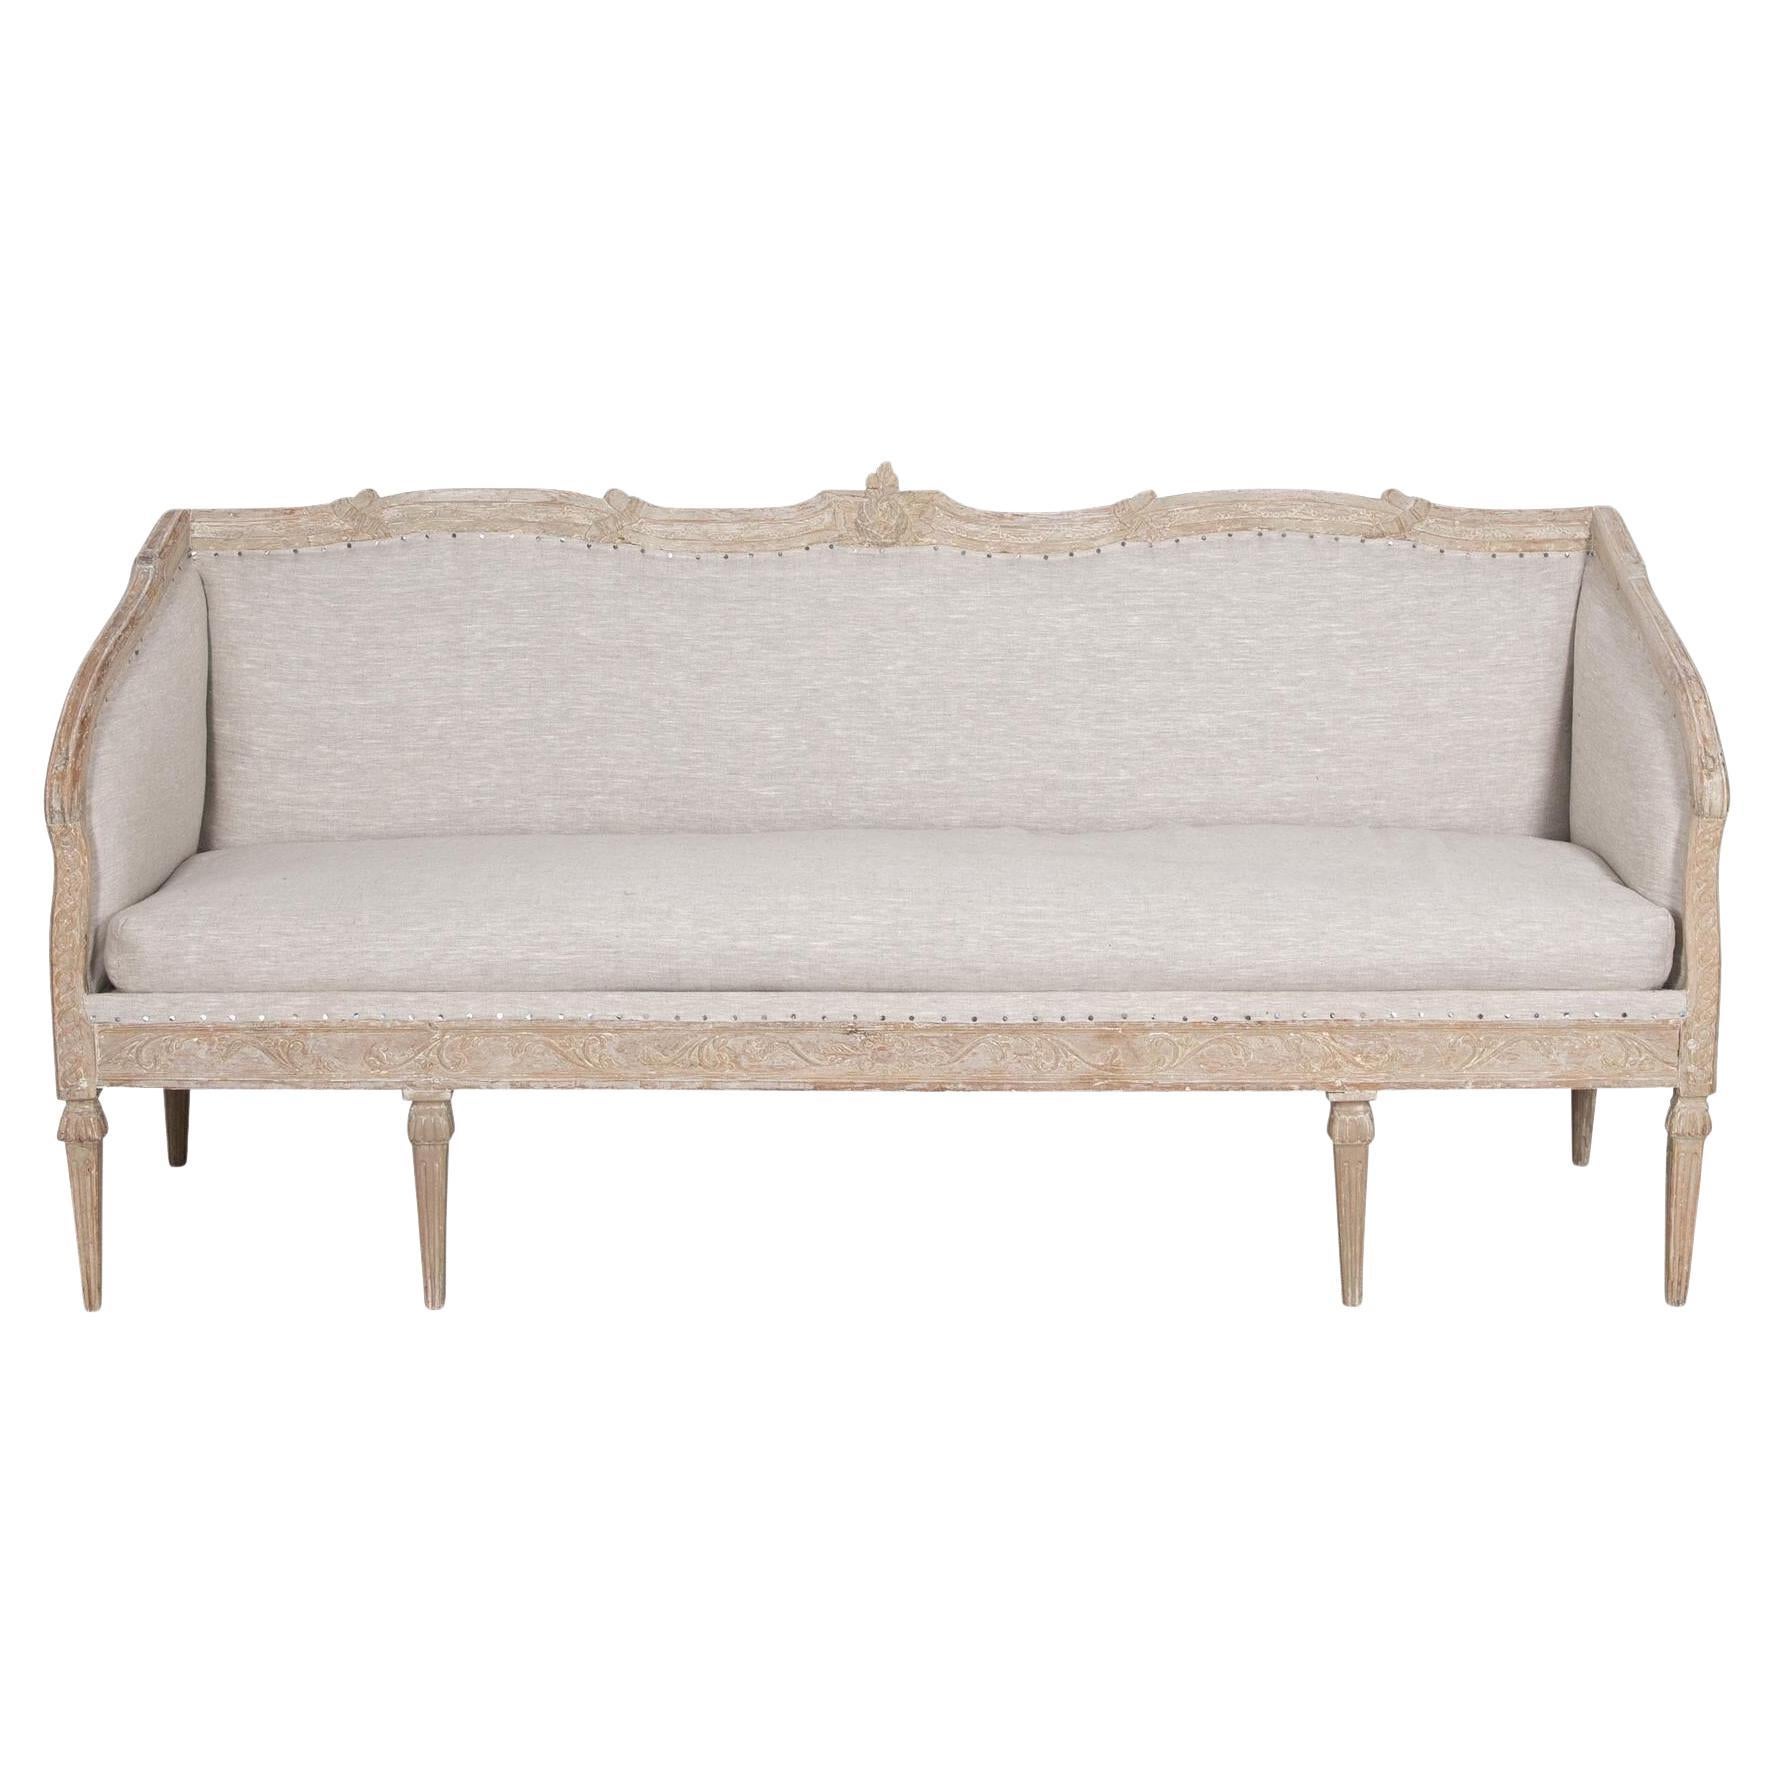 Gustavianisches Sofa aus dem 18.